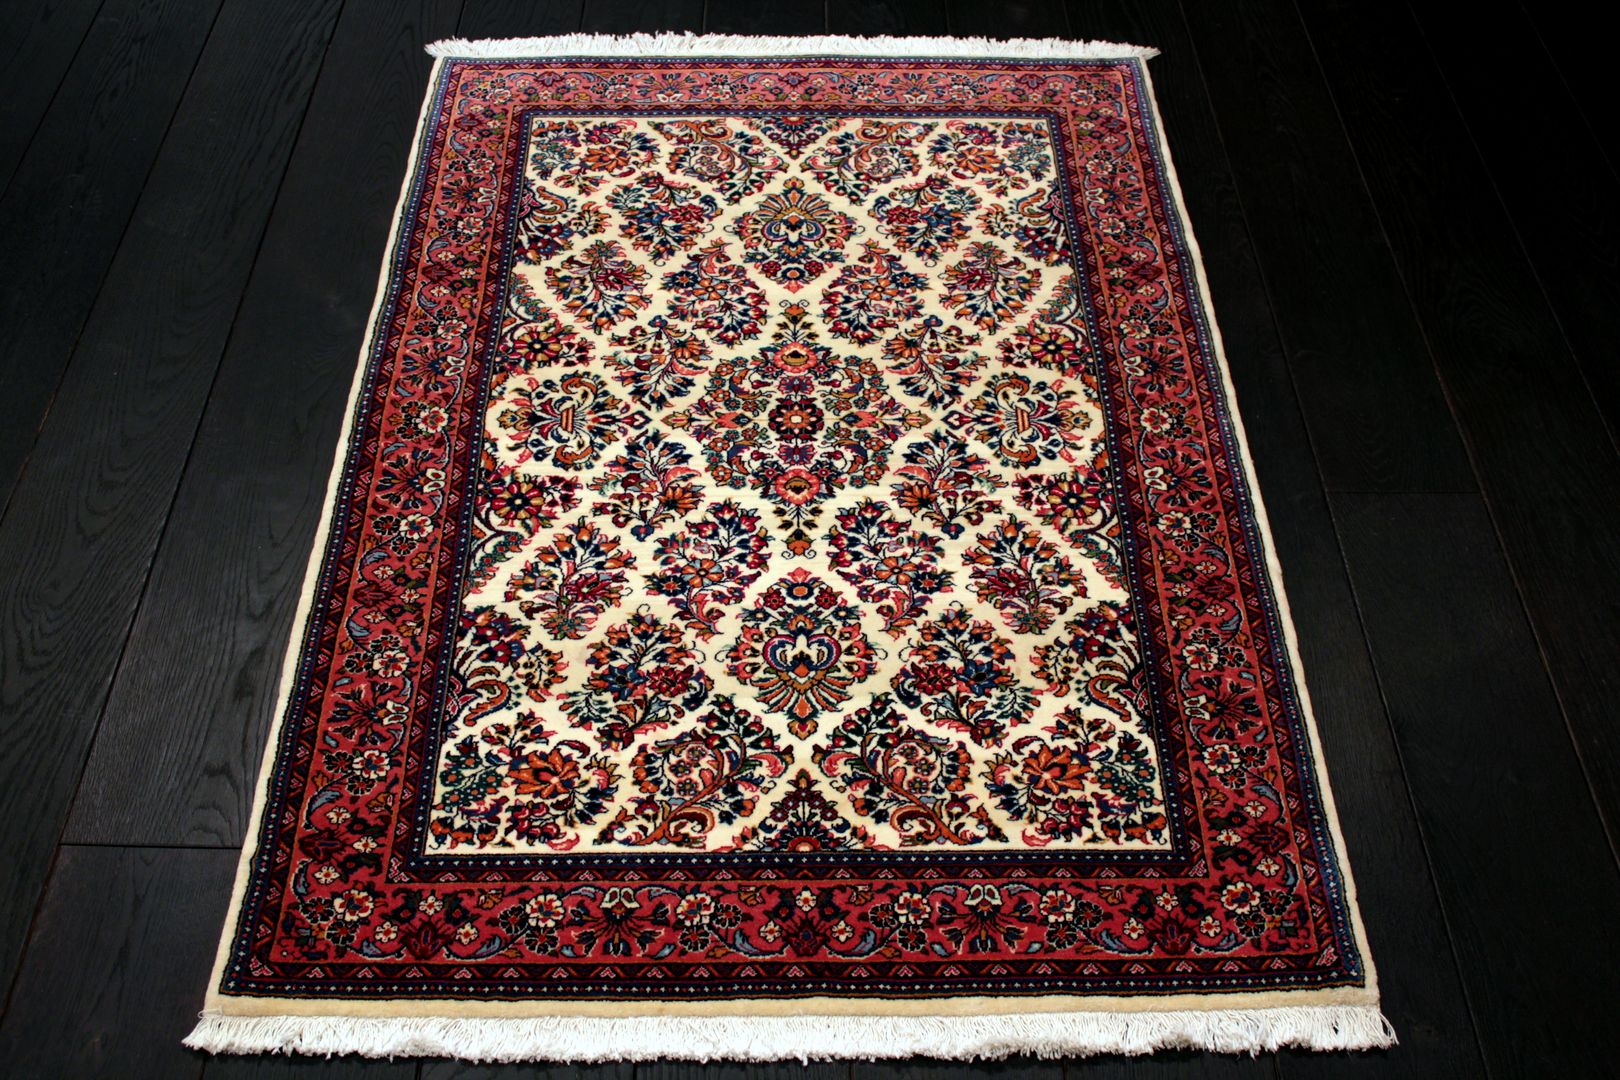 Irańskie dywany tradycyjne, Sarmatia Trading Sarmatia Trading Planchers Laine Orange Tapis